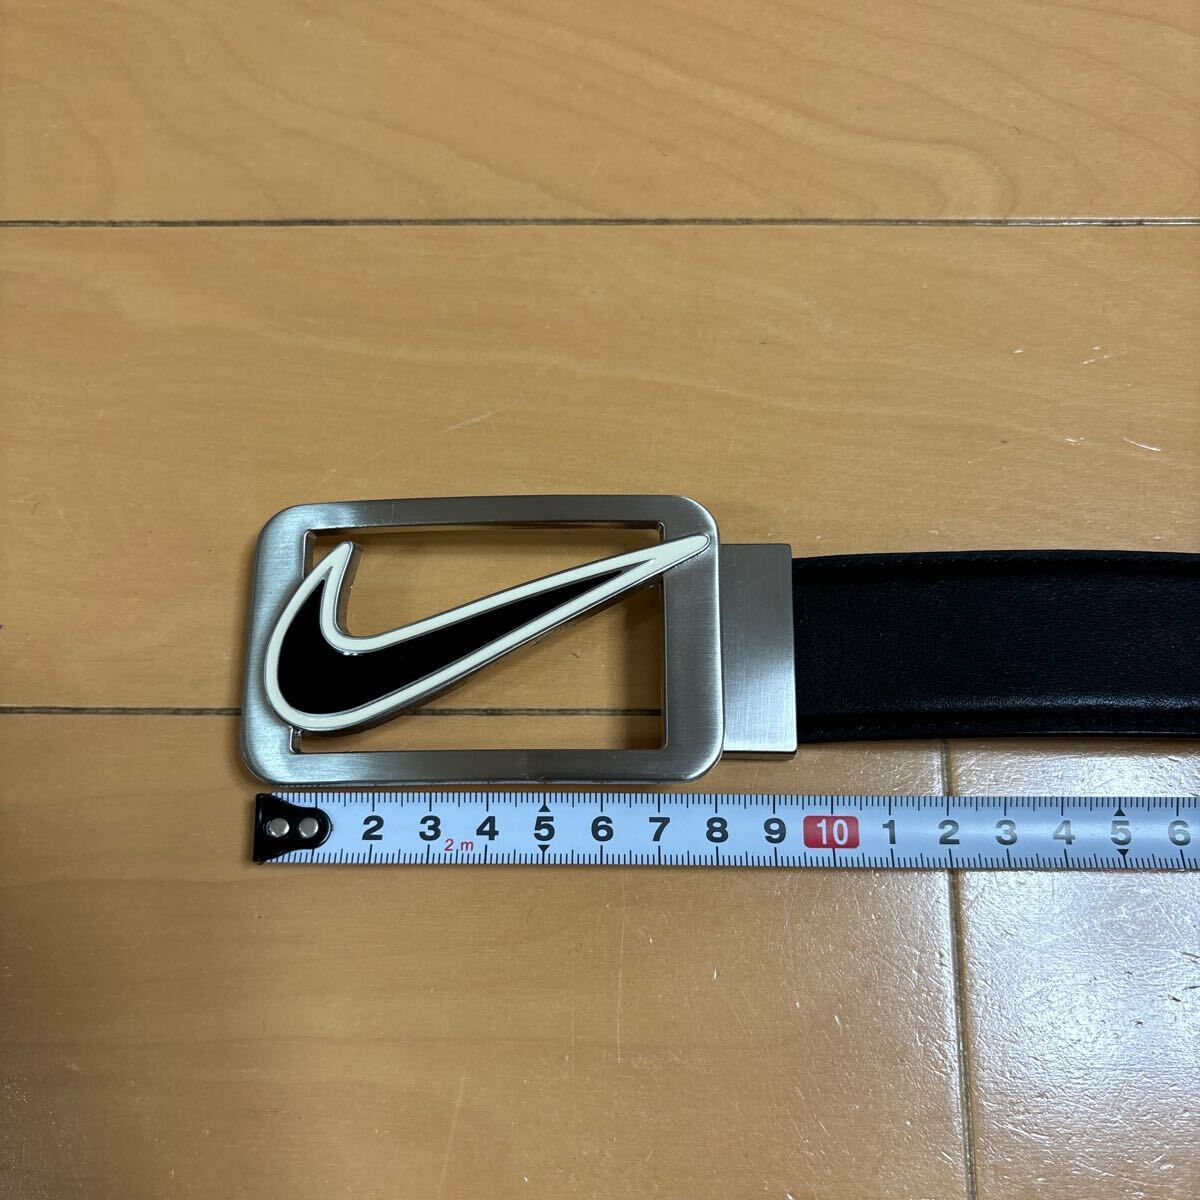  Nike Golf ремень NIKE большой swoshu дизайн пряжка серебряный × черный cut возможность ремень дыра положение максимальный 96cm включая доставку 